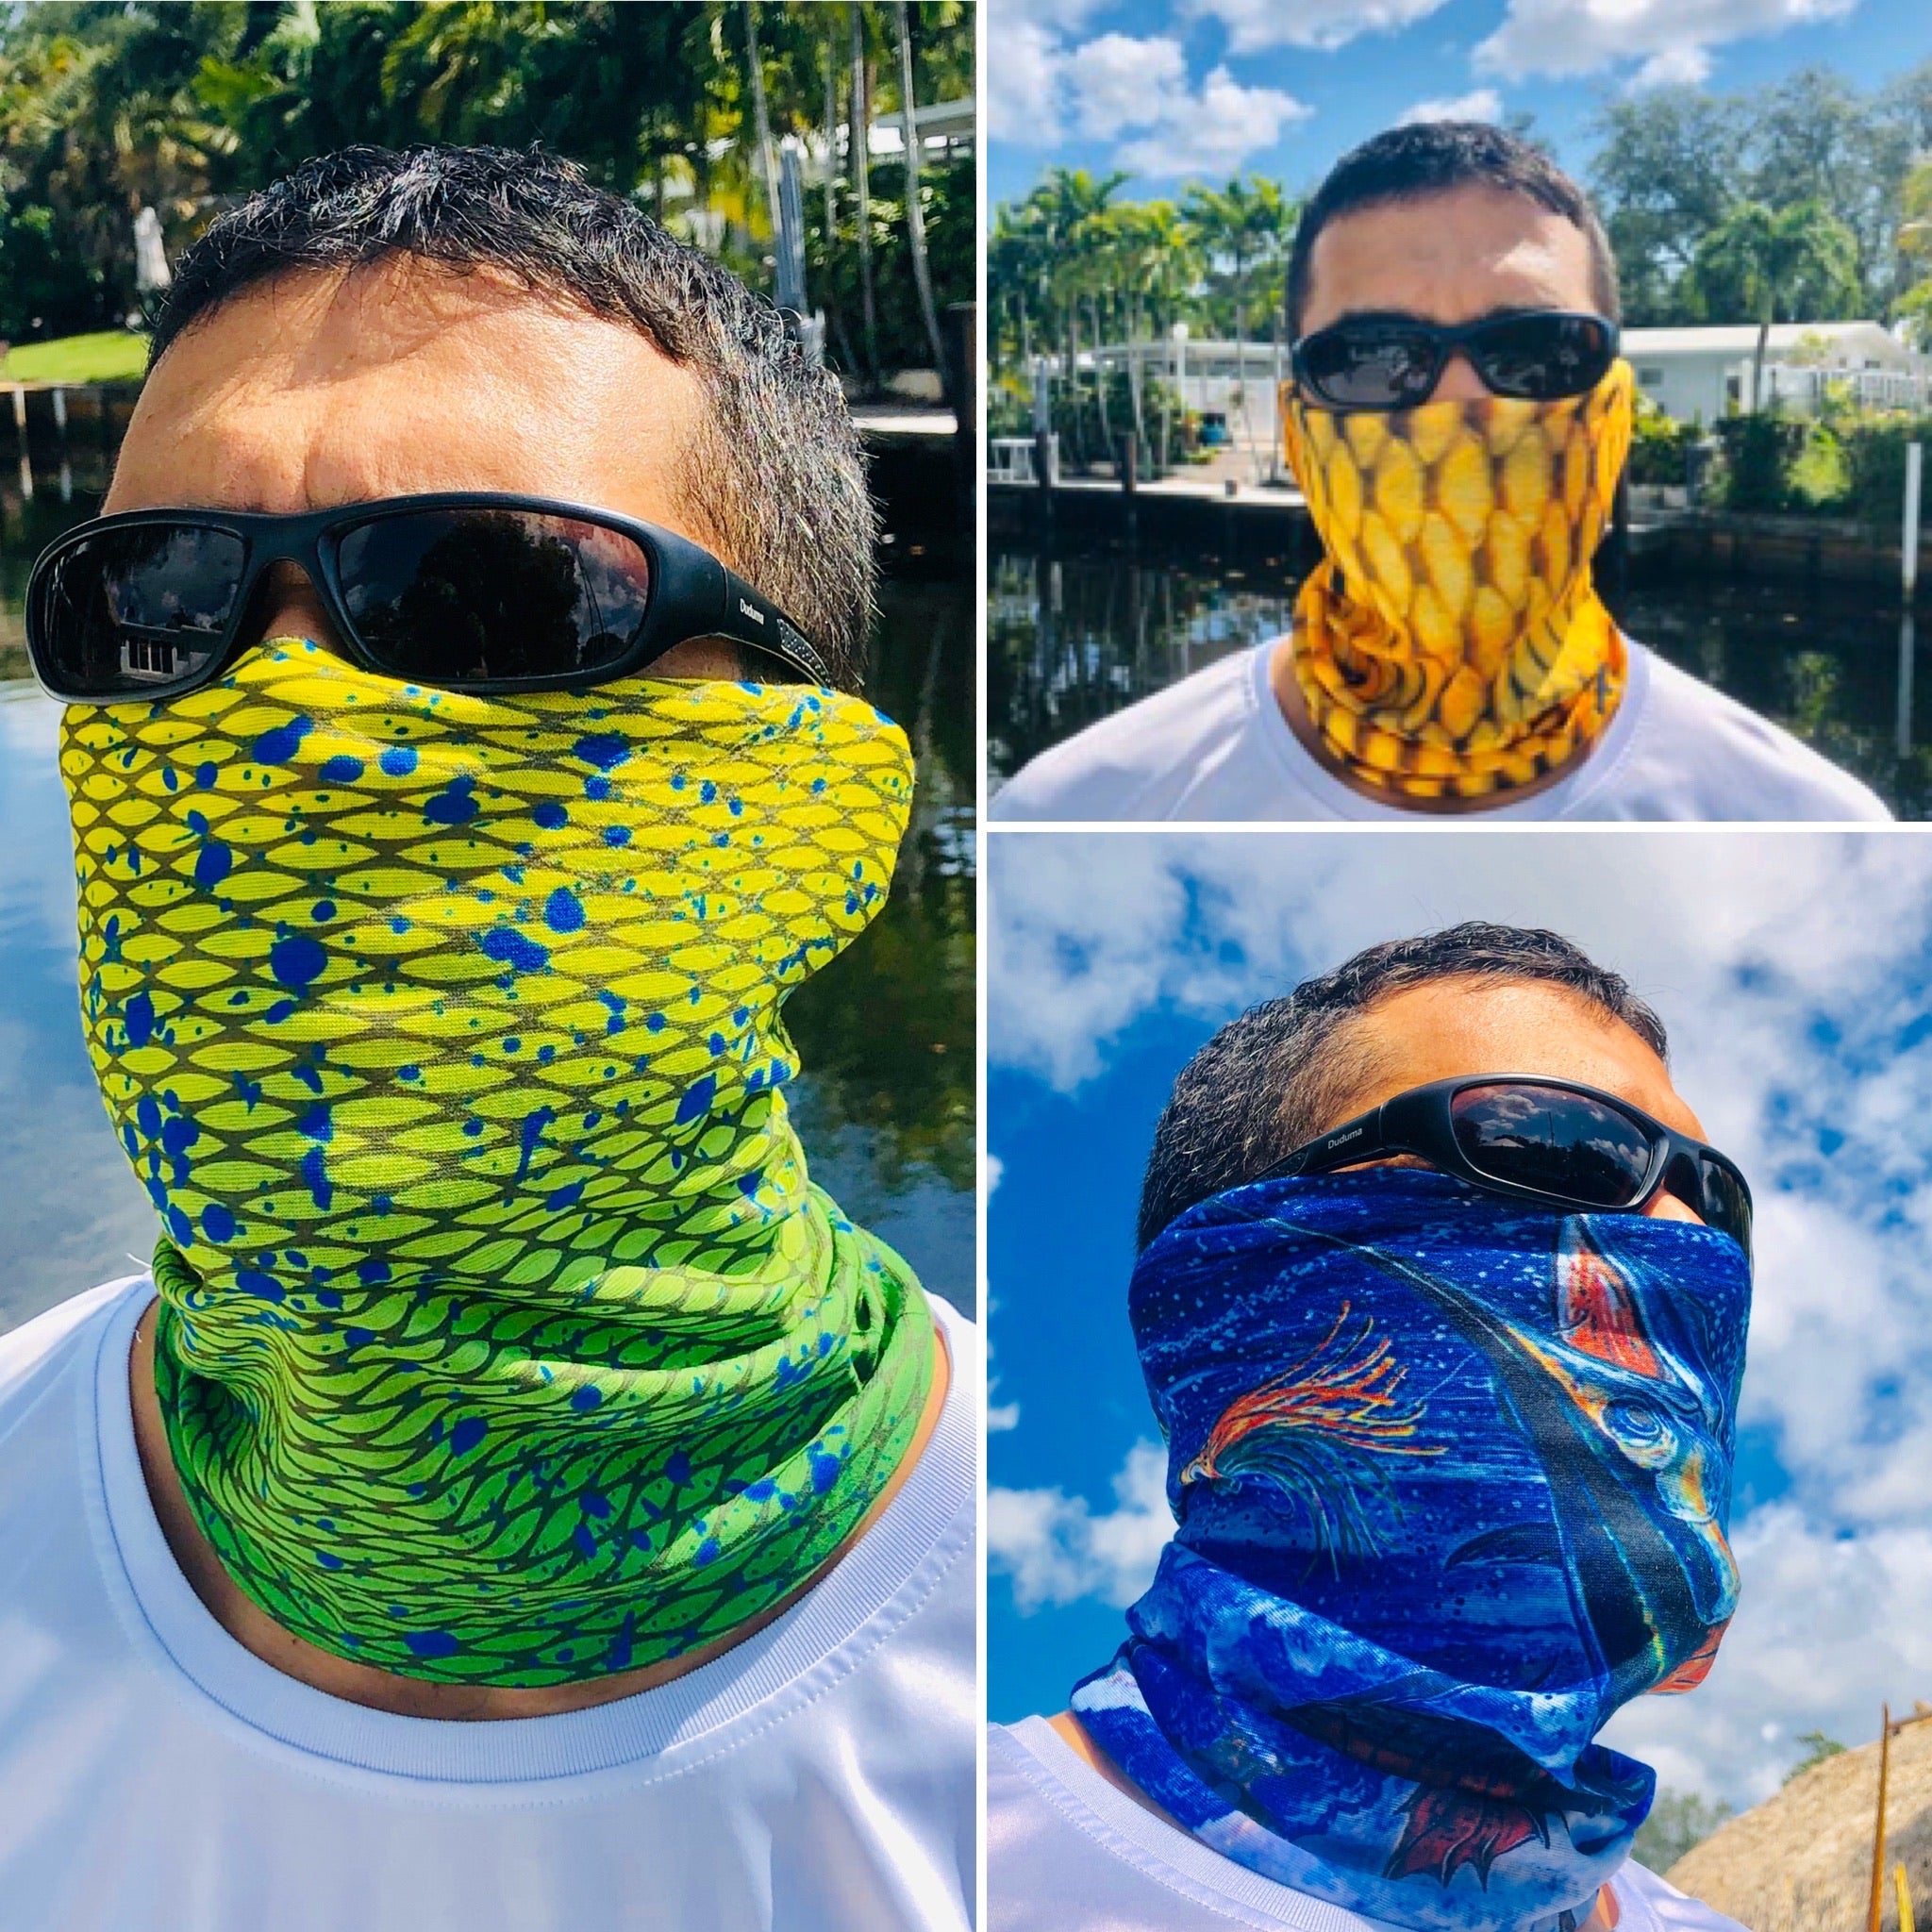 Virus Artifact afstemning UV Fishing Face Mask Bandanas - 3 Pack of Face Shields